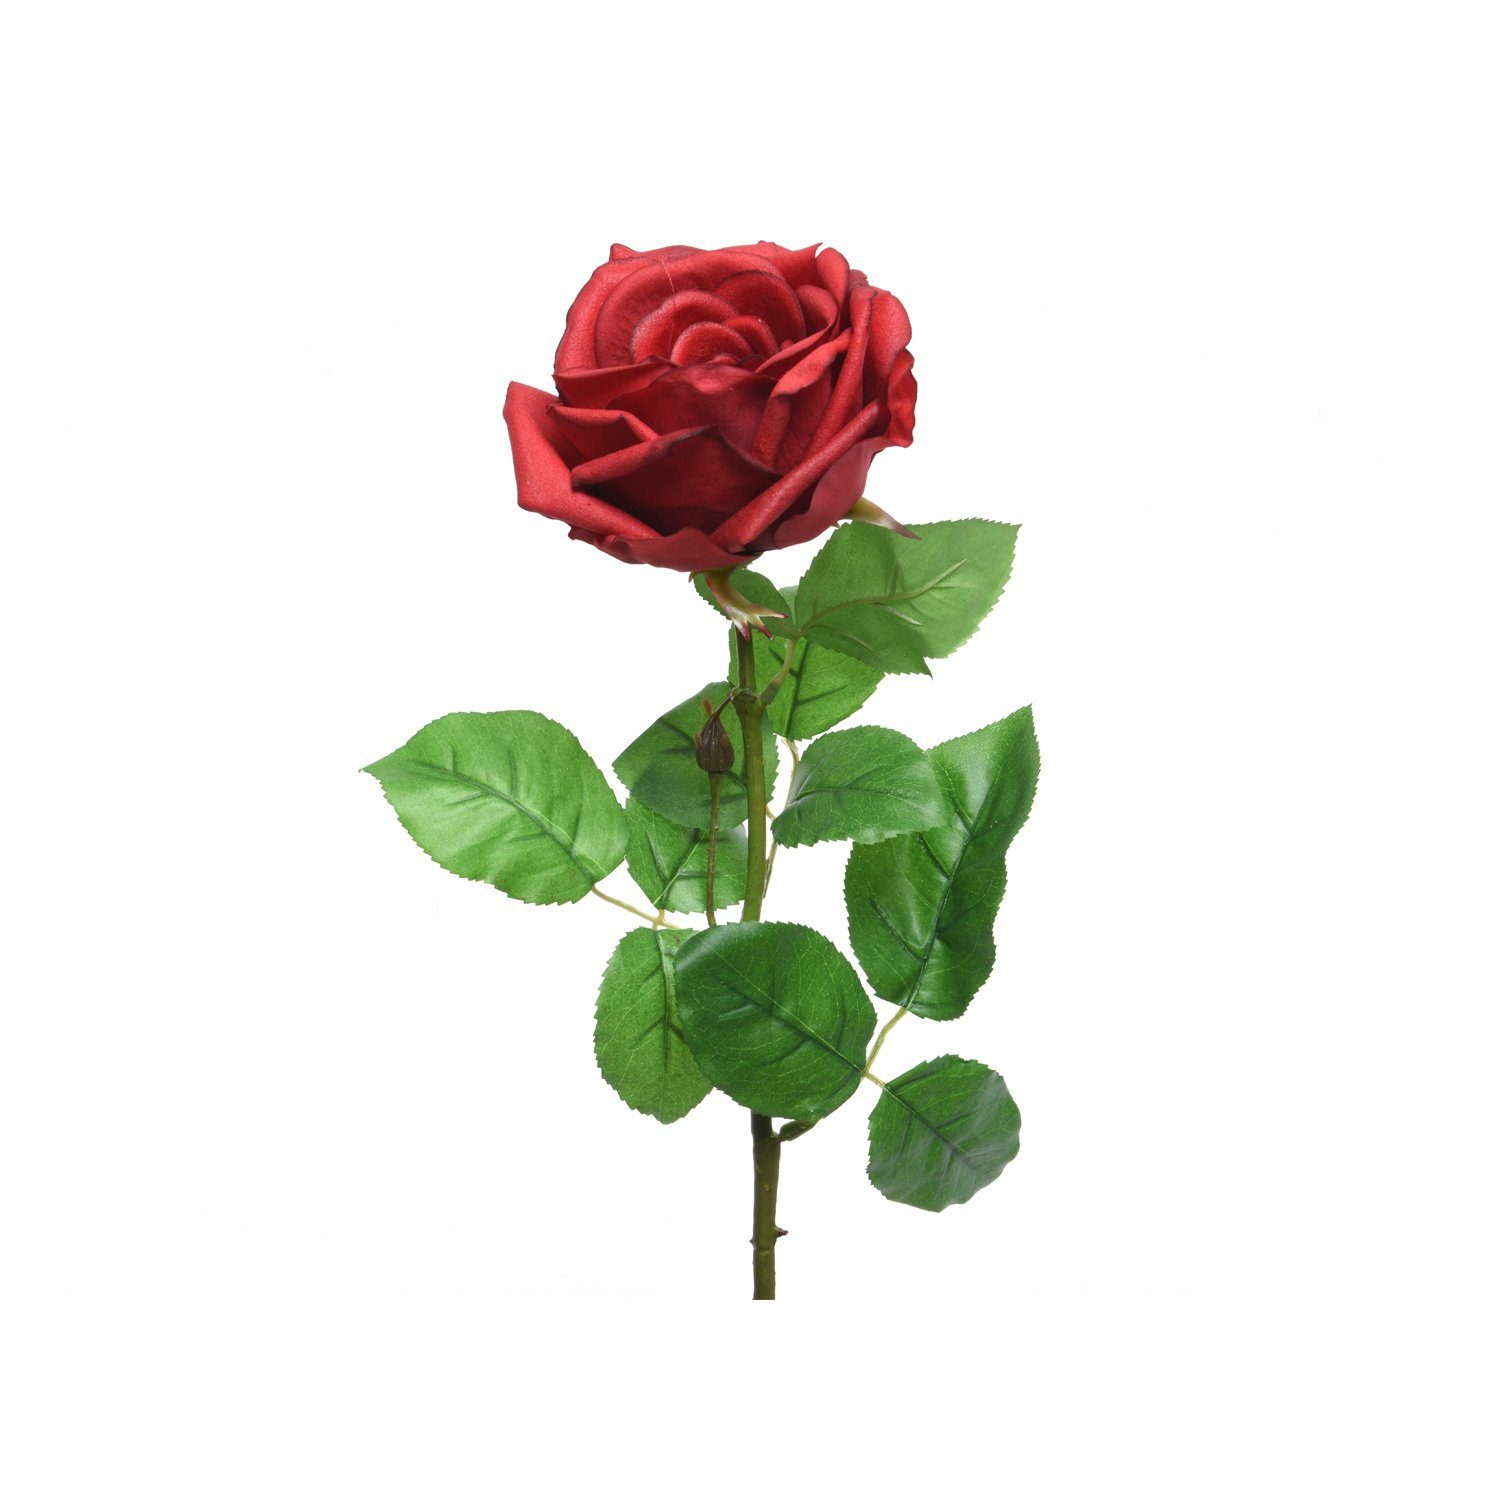 Kunstblume Rose am Stiel Kunstblume Rosenblüte künstlich Real Touch H: 68cm rot, MARELIDA, Höhe 68 cm